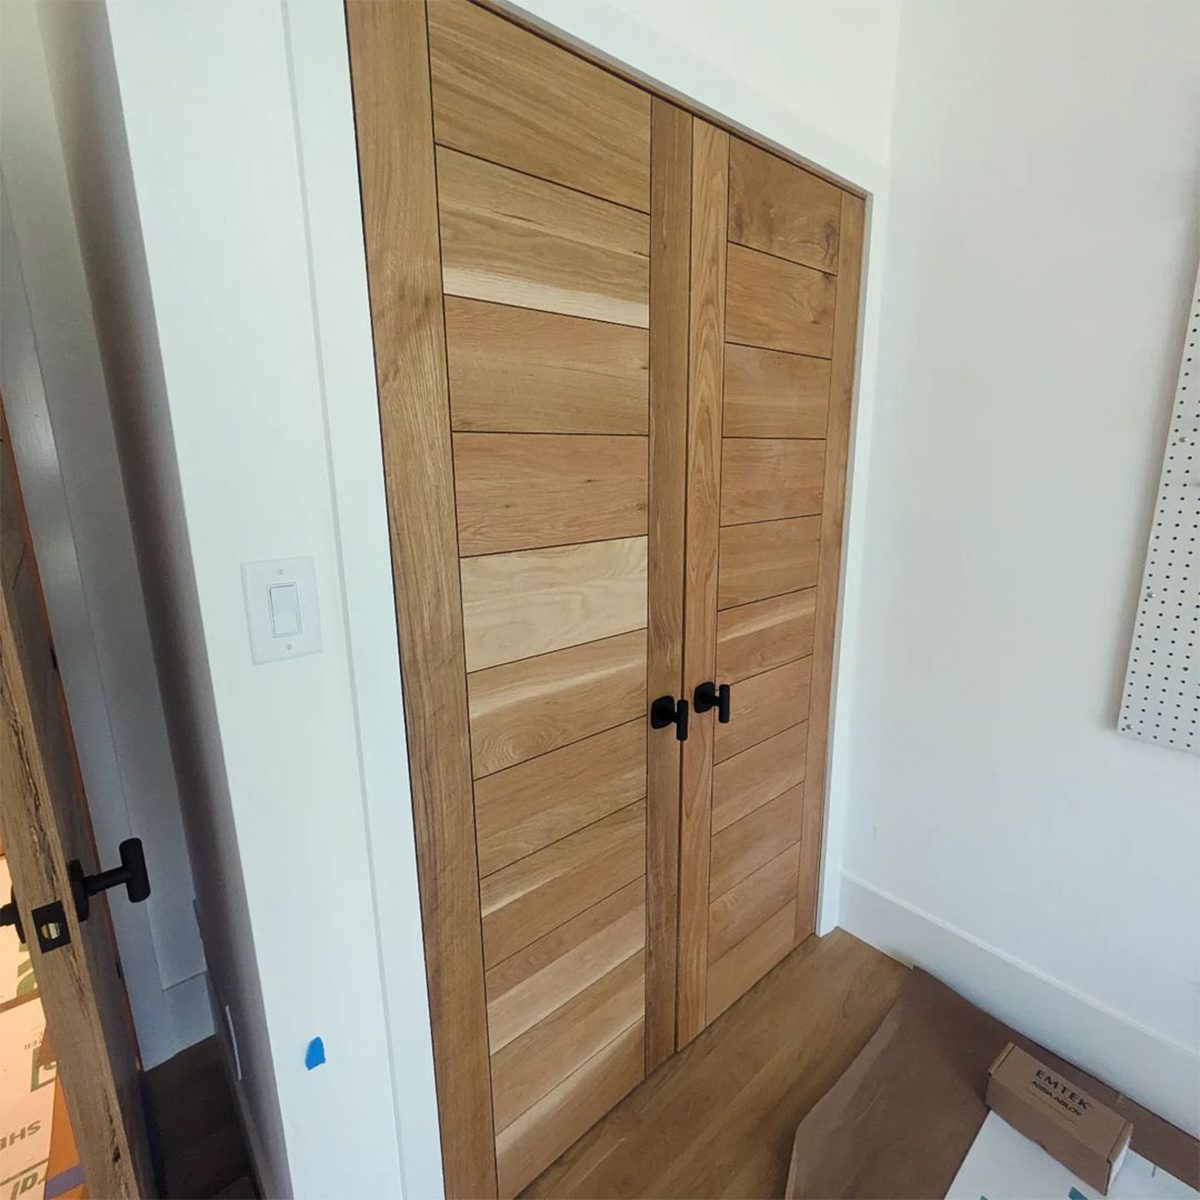 10 Diy Closet Door Ideas To Enhance Your Home Contemporary Oak Closet Doors Courtesy @appwoodcustom A